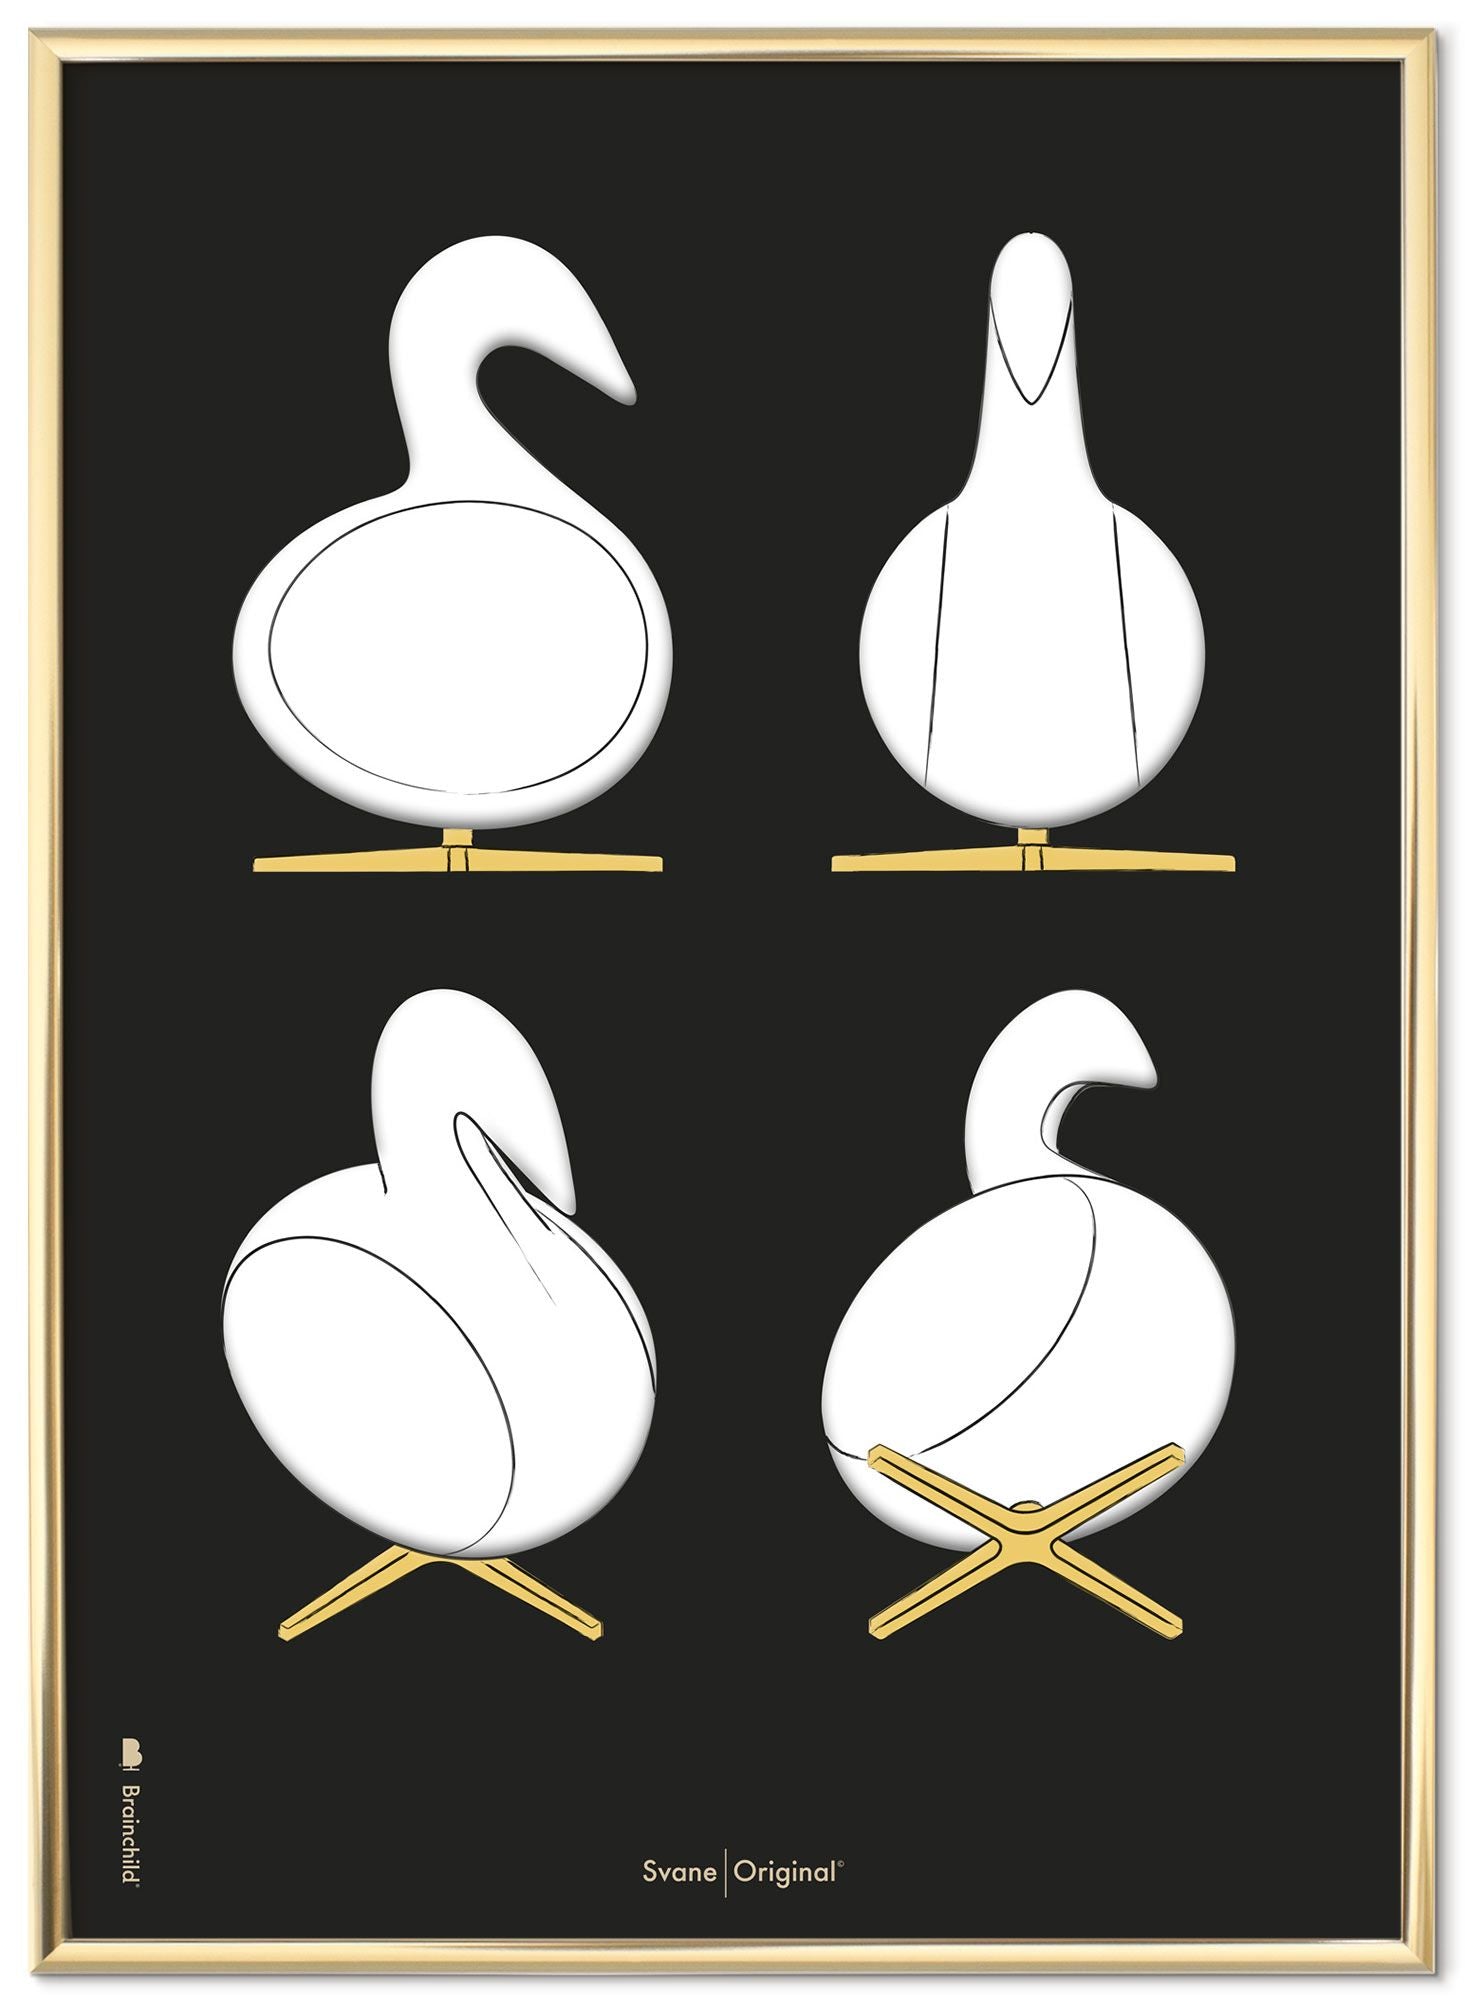 Swan Croquis de la conception du cygne